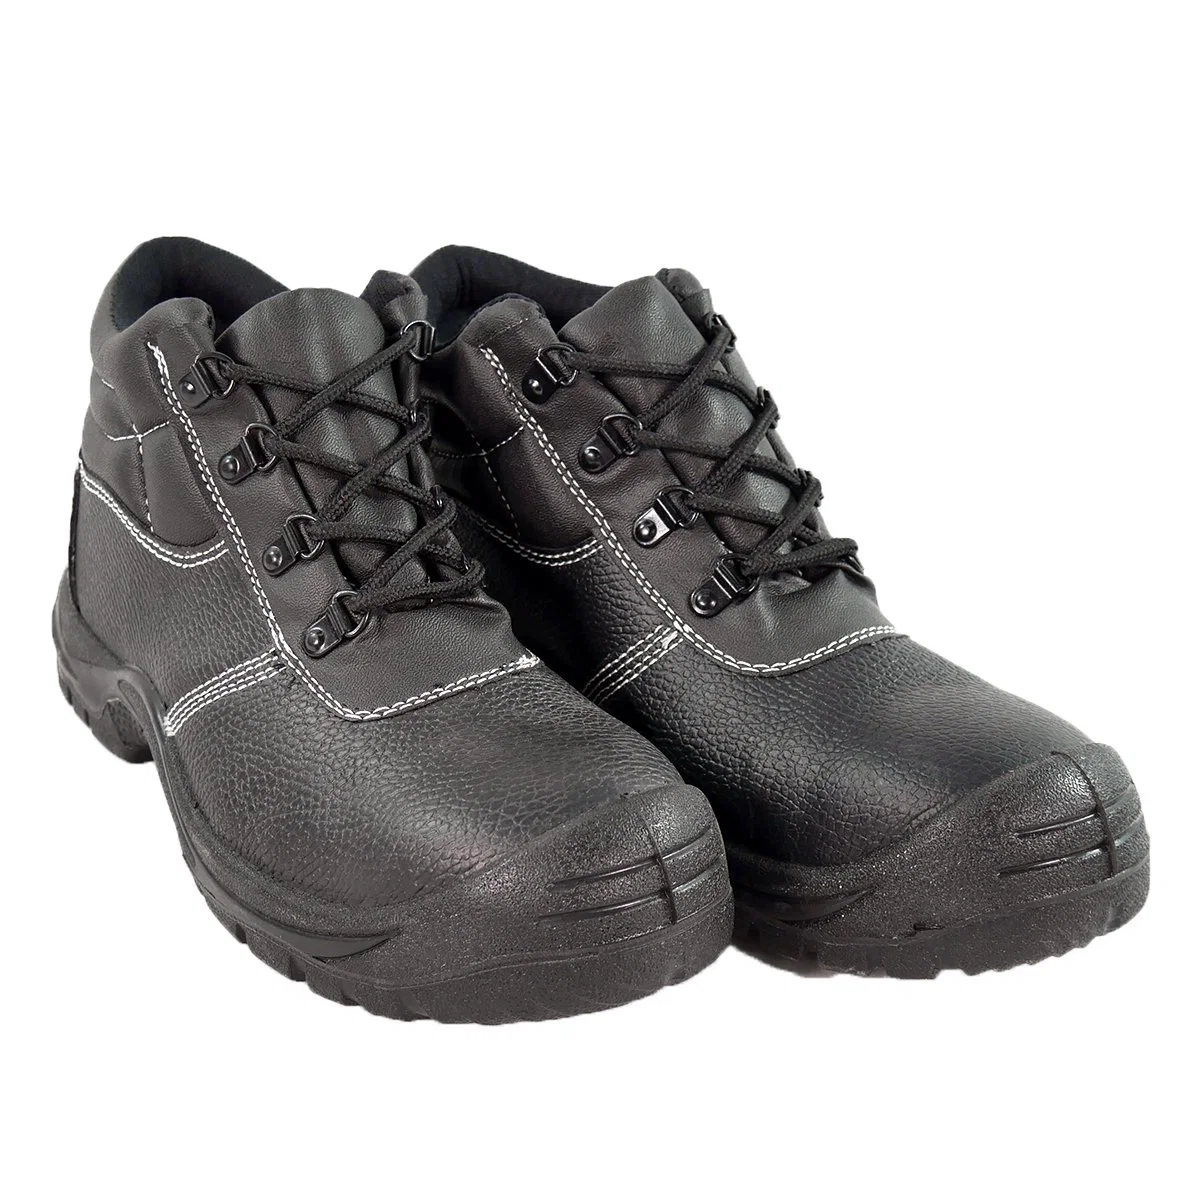 أحذية السلامة عالية الجودة من الصلب الكلاسيكية للبيع بالجملة بالنسبة للرجال أحذية العمل الآمنة غير القابلة للتدمير المضادة للتدمير